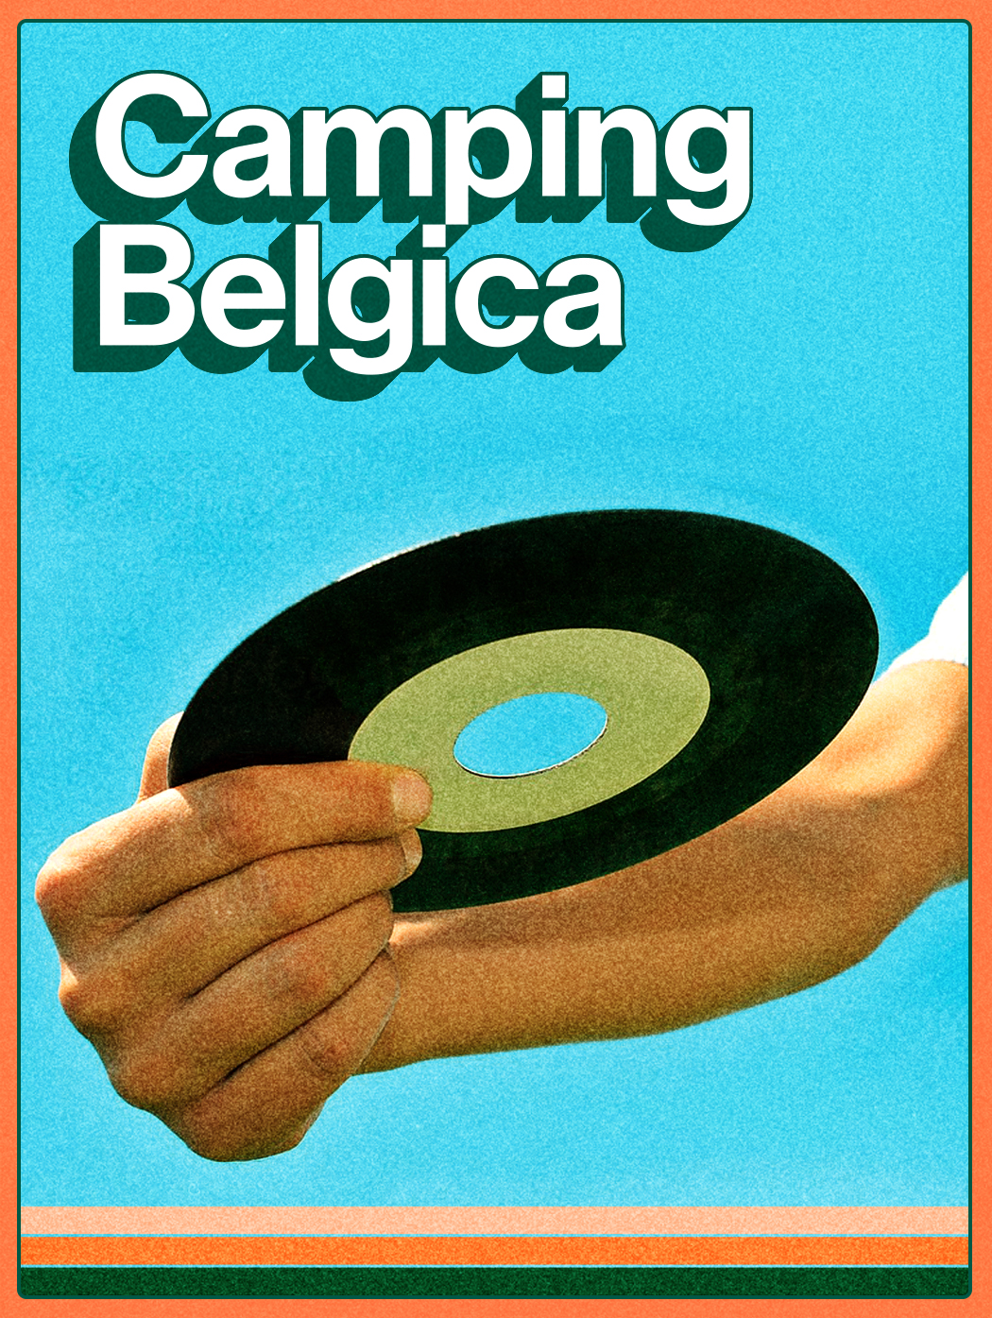 Camping Belgica: meer dan 100 bekende gasten en dj's zorgen deze zomer voor zwoele vibes op Studio Brussel